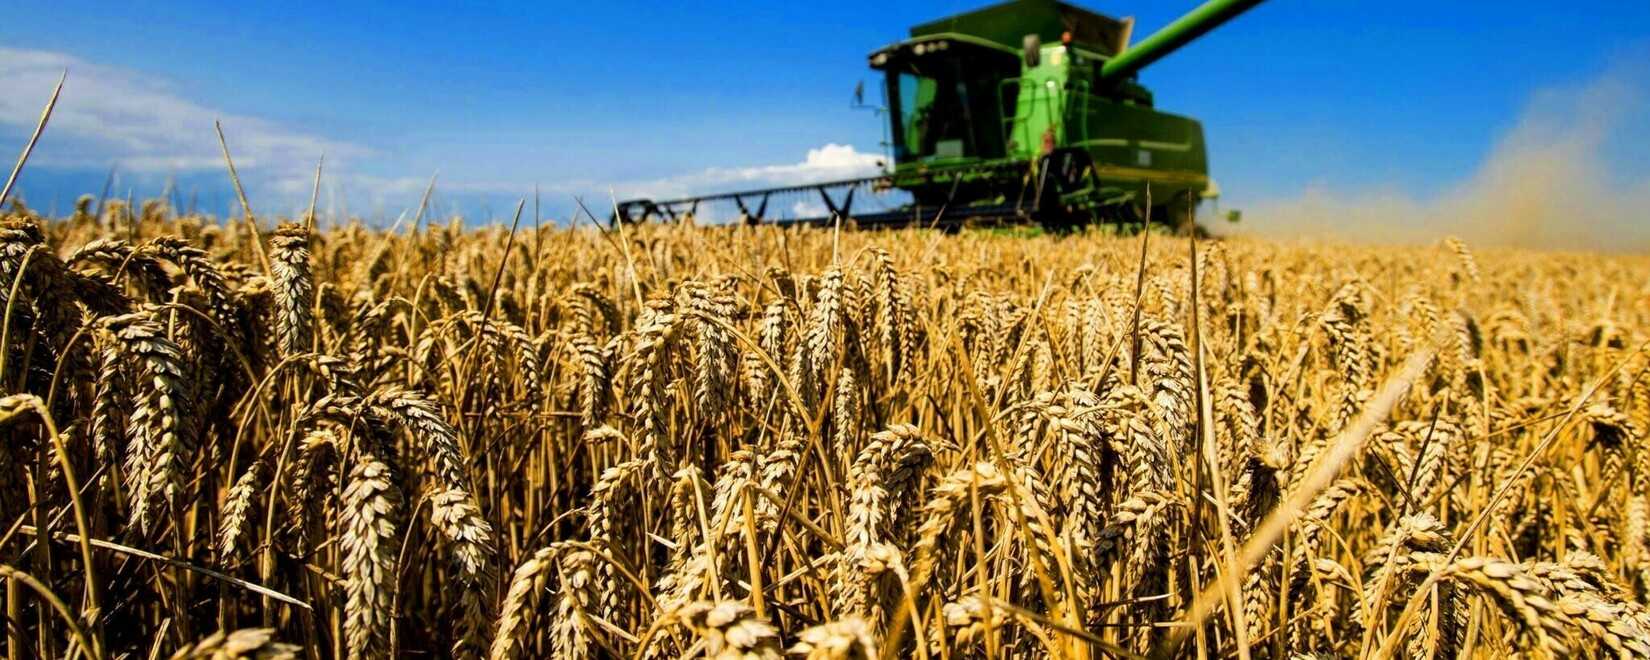 На заседании стран содружества Белоруссия выступила с предложением создать единый аграрный рынок для стран СНГ